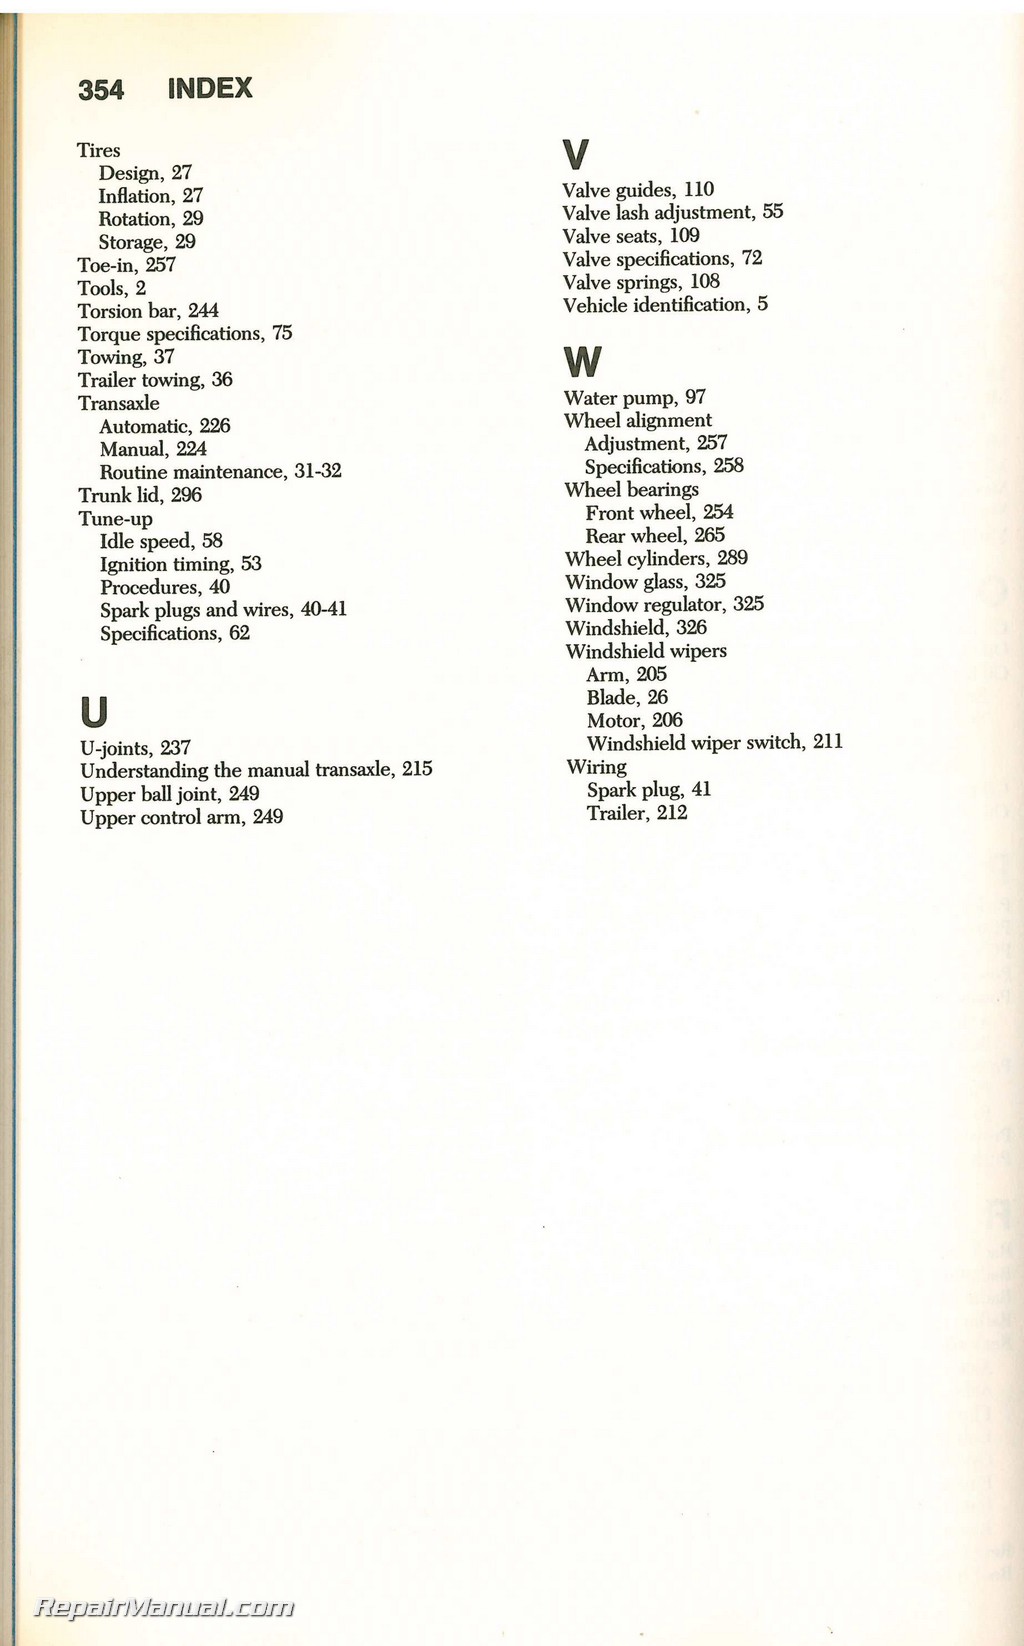 1989 Honda civic repair manual pdf